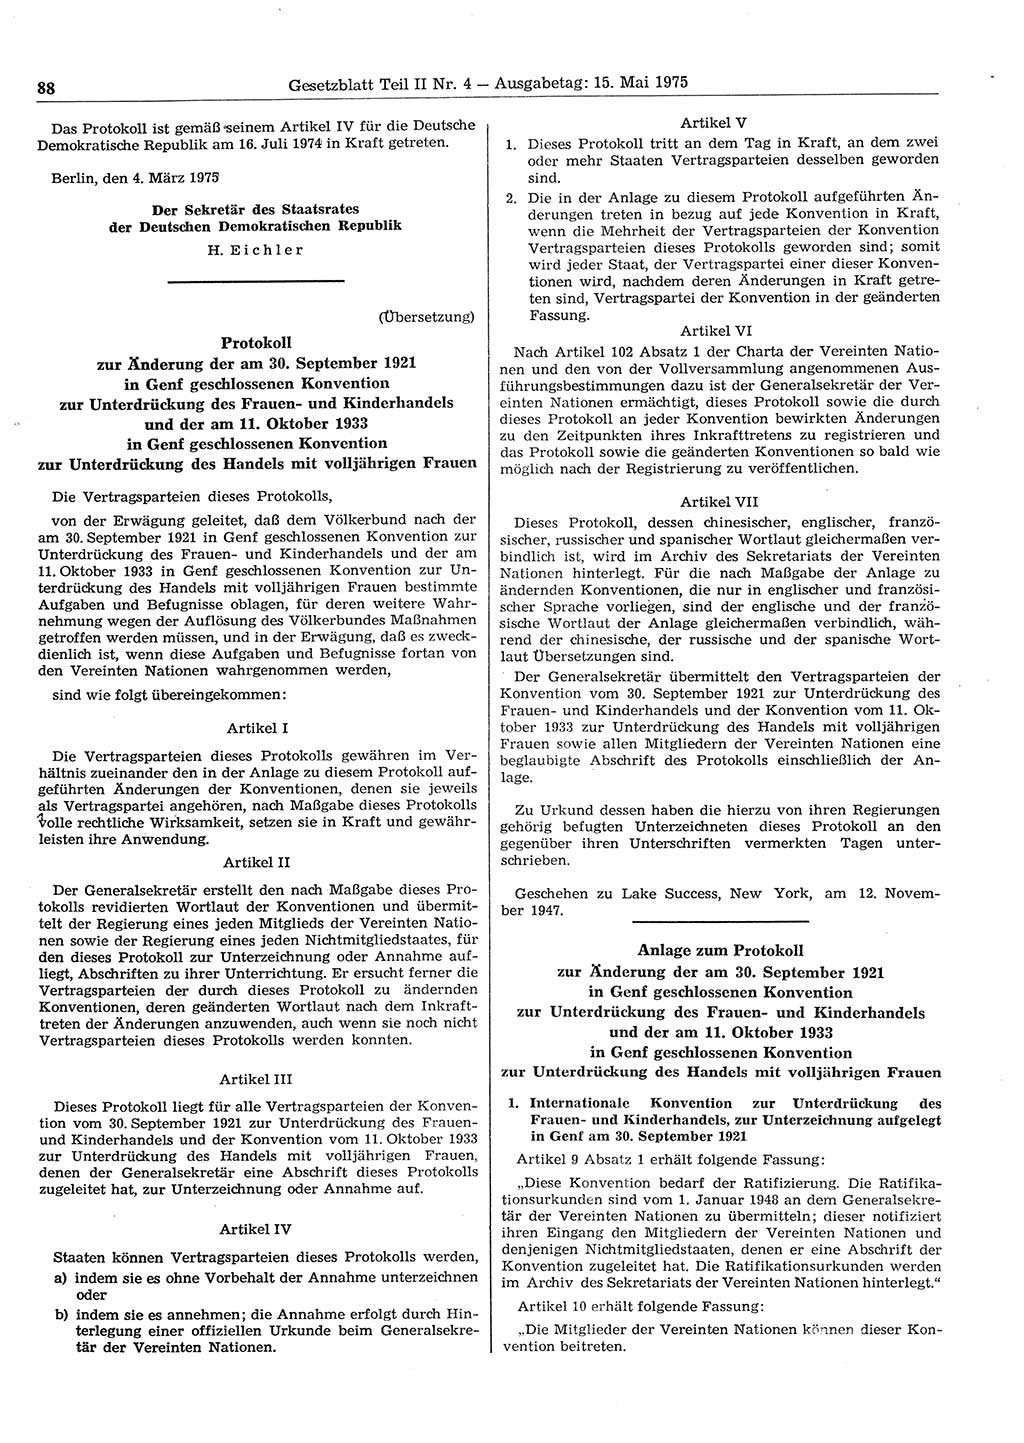 Gesetzblatt (GBl.) der Deutschen Demokratischen Republik (DDR) Teil ⅠⅠ 1975, Seite 88 (GBl. DDR ⅠⅠ 1975, S. 88)